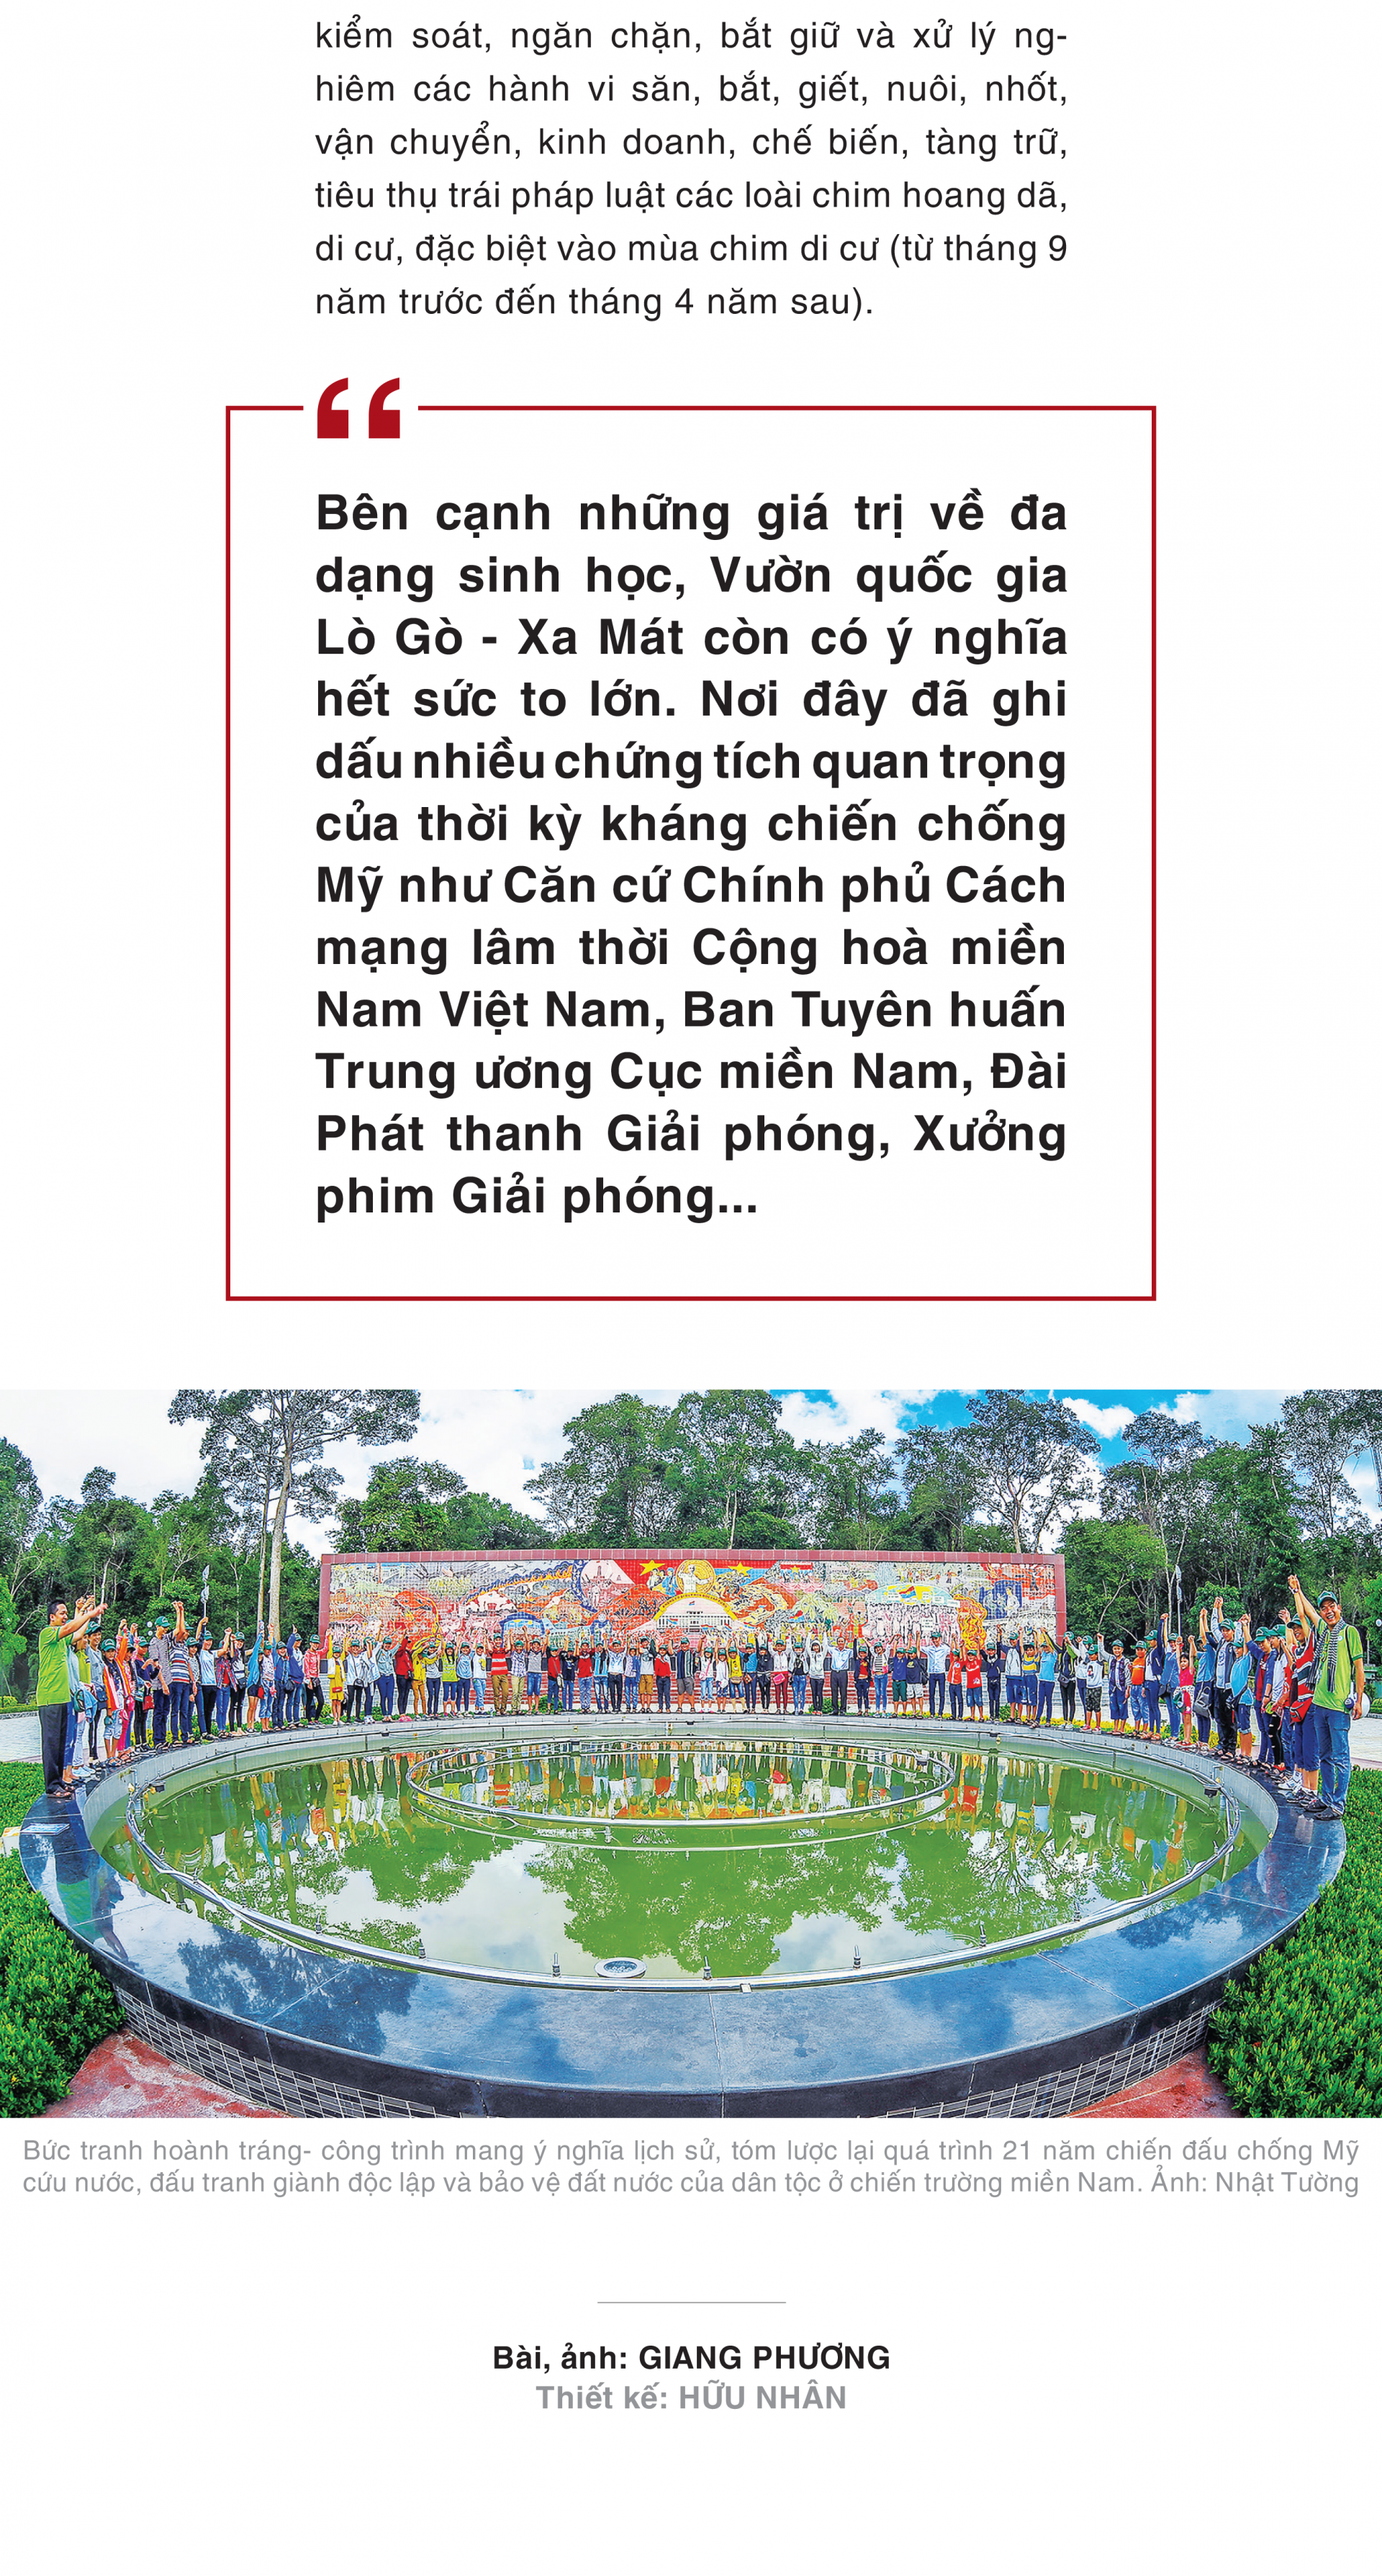 Vườn di sản ASEAN Lò Gò - Xa Mát: Khu bảo tồn tự nhiên độc đáo ở Việt Nam